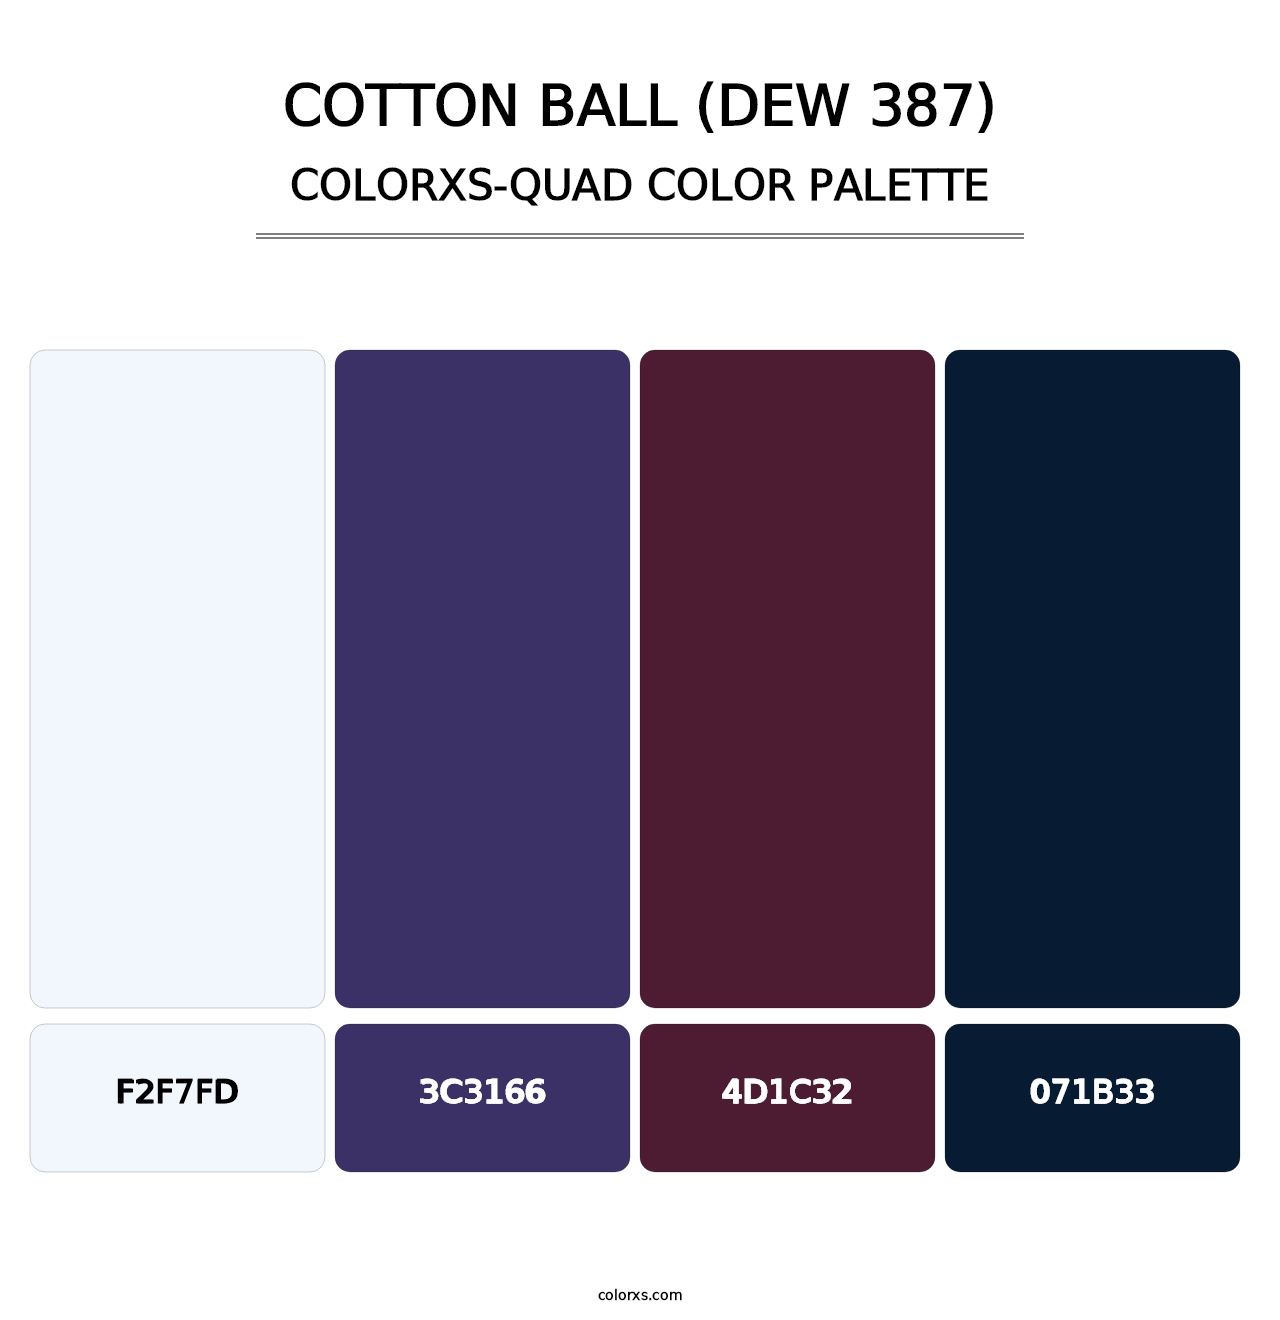 Cotton Ball (DEW 387) - Colorxs Quad Palette